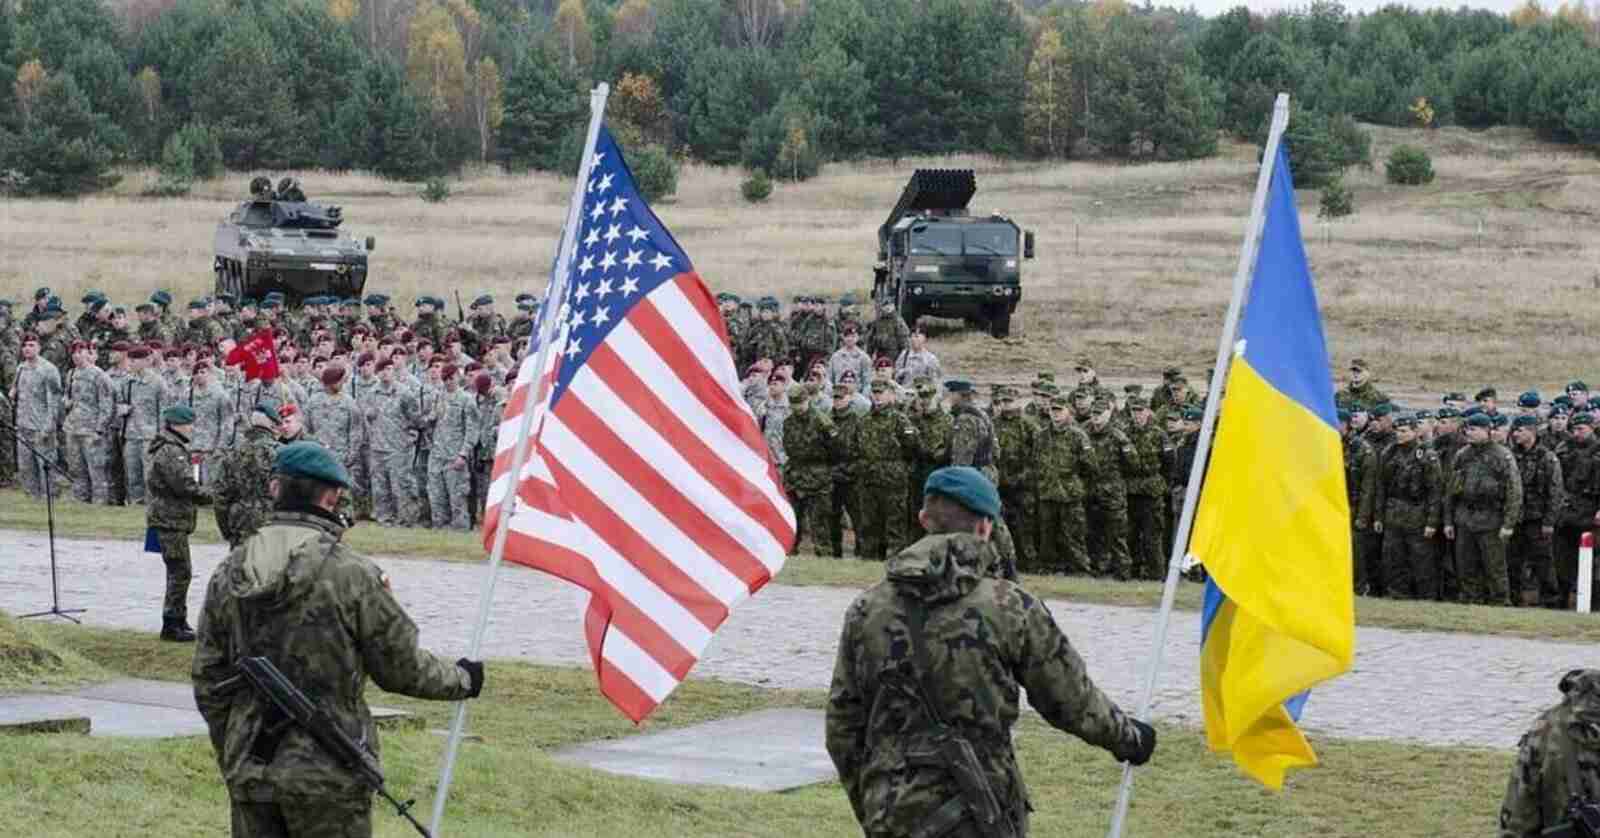 Ще один американський доброволець загинув на війні за незалежність України